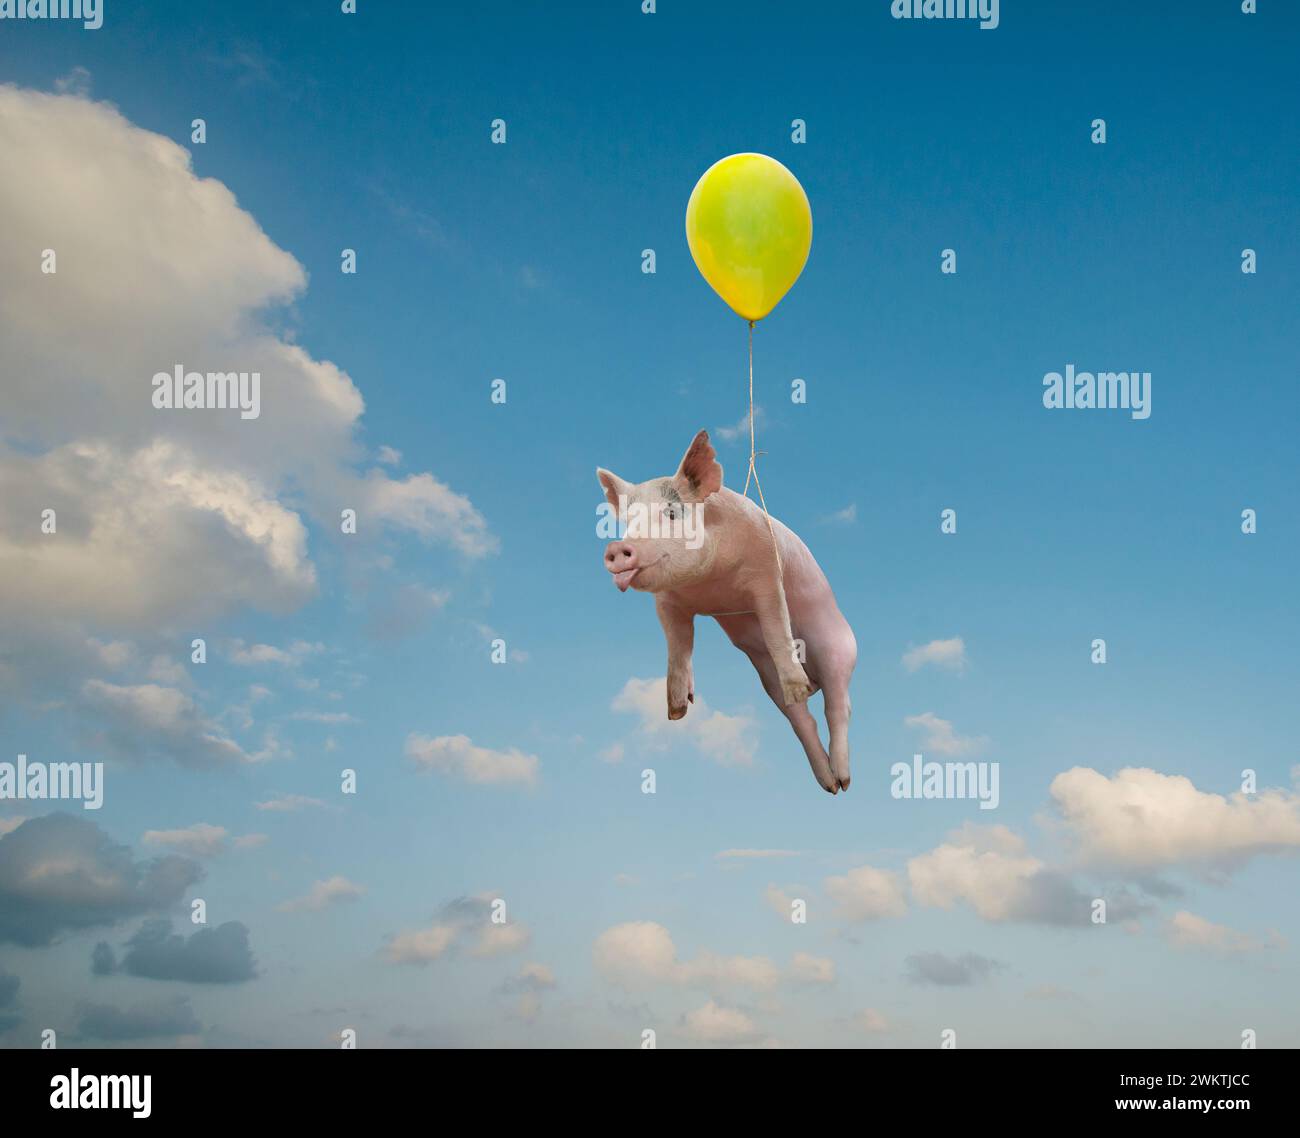 L'idiome "When Pigs Fly" est vu dans cette drôle de photo d'un cochon flottant sous un ballon à travers un ciel dramatique. Banque D'Images